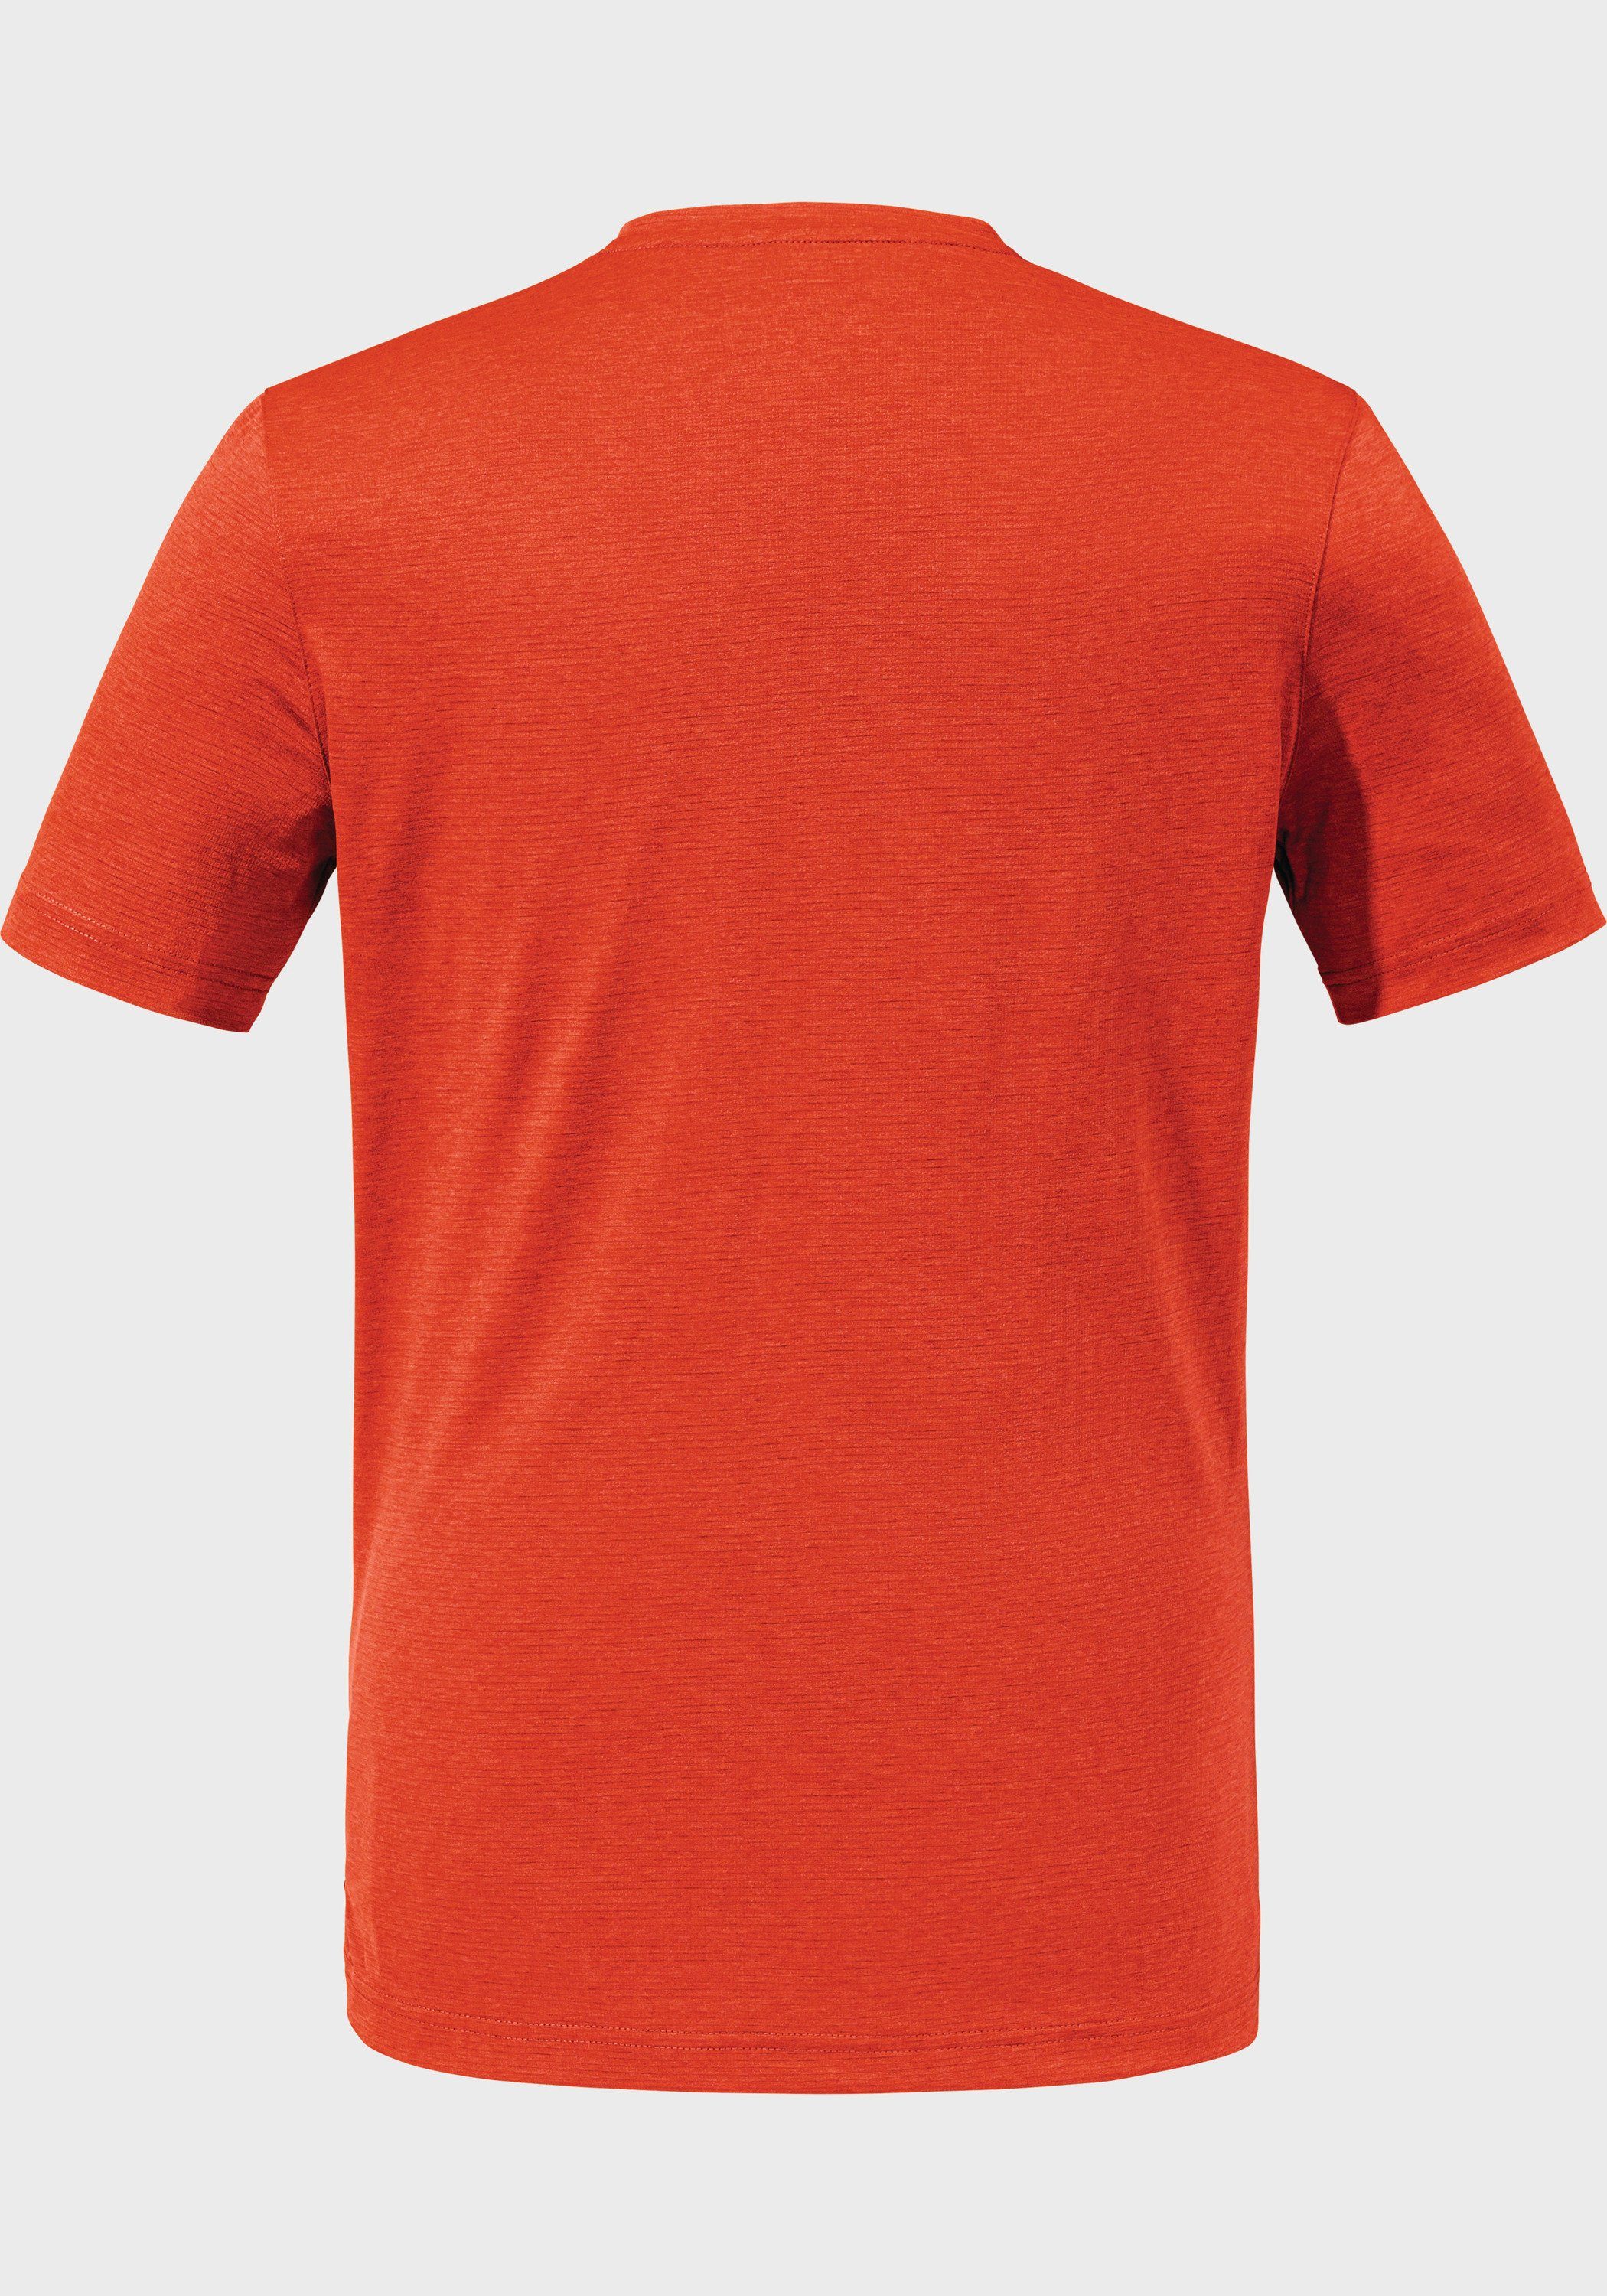 Schöffel Functioneel shirt CIRC T Shirt Sulten M